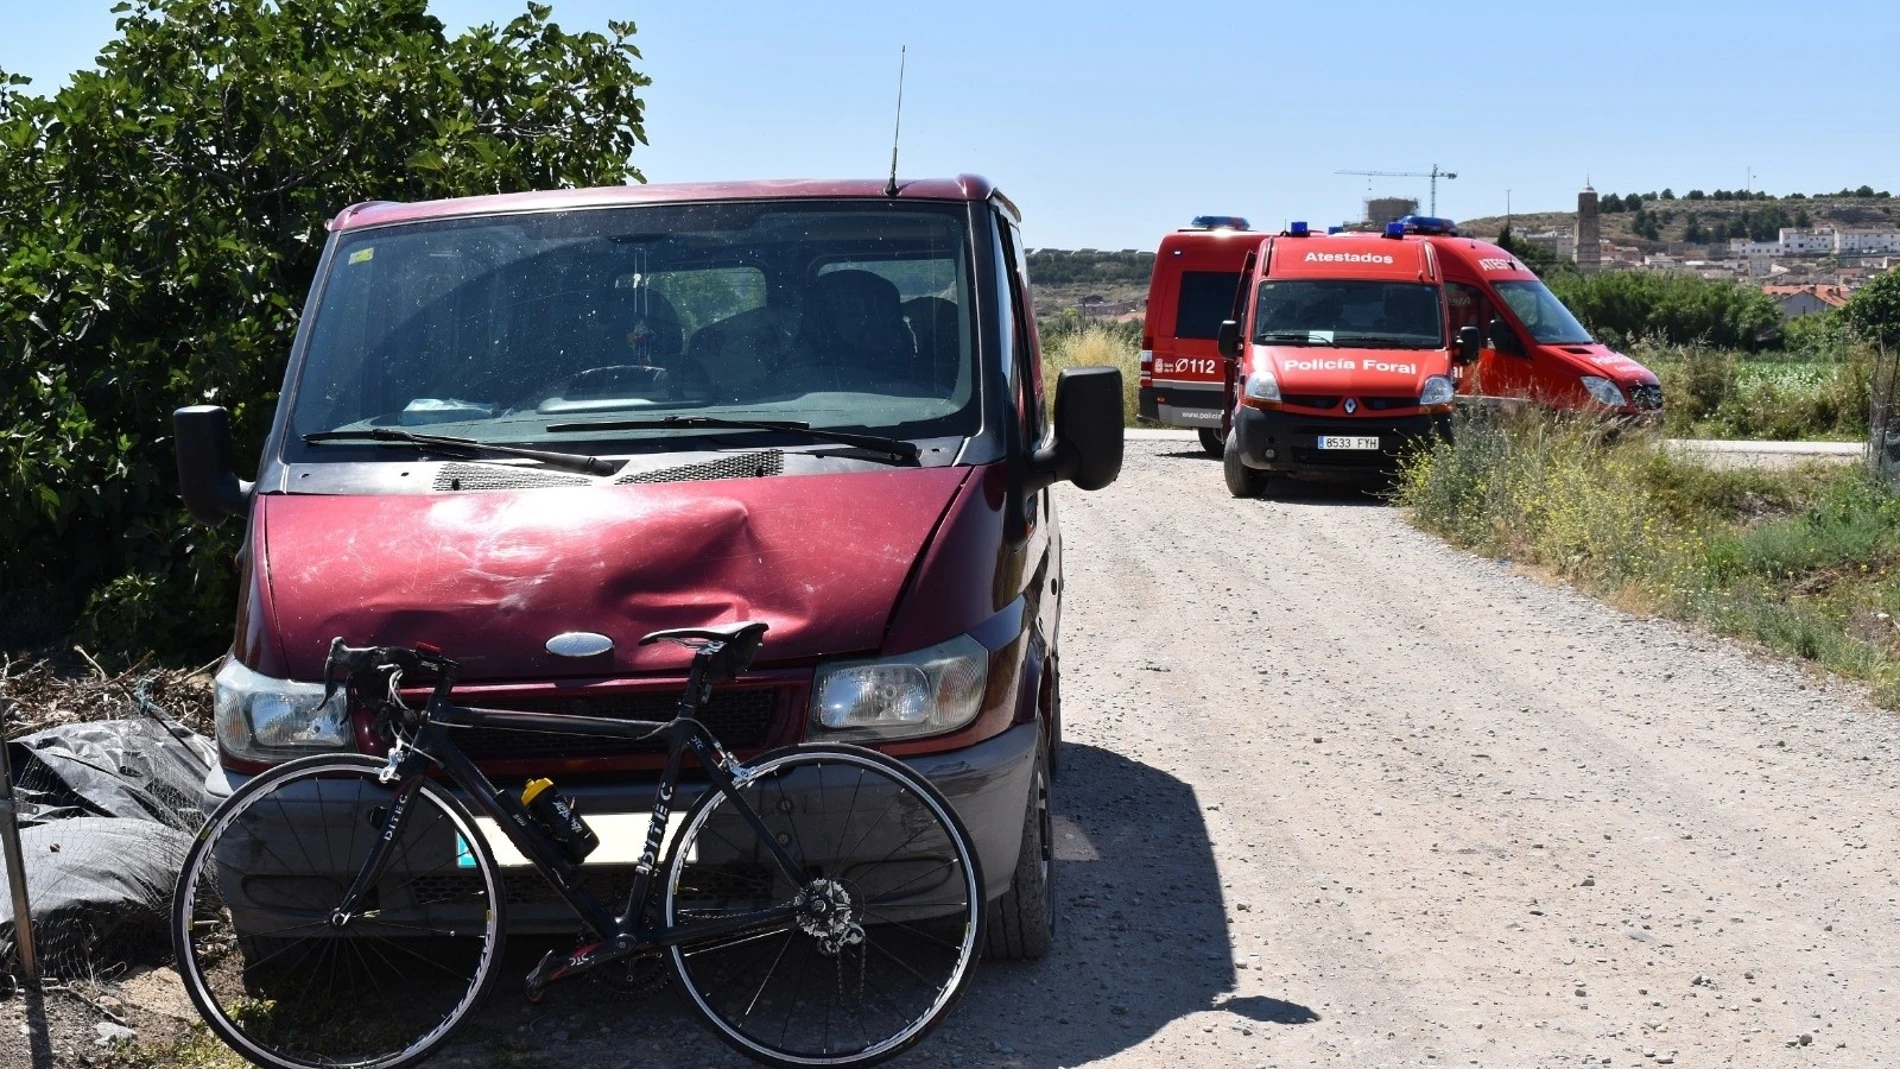 Sucesos.- Herido grave un ciclista al ser atropellado por una furgoneta, cuyo conductor ha intentado darse a la fuga